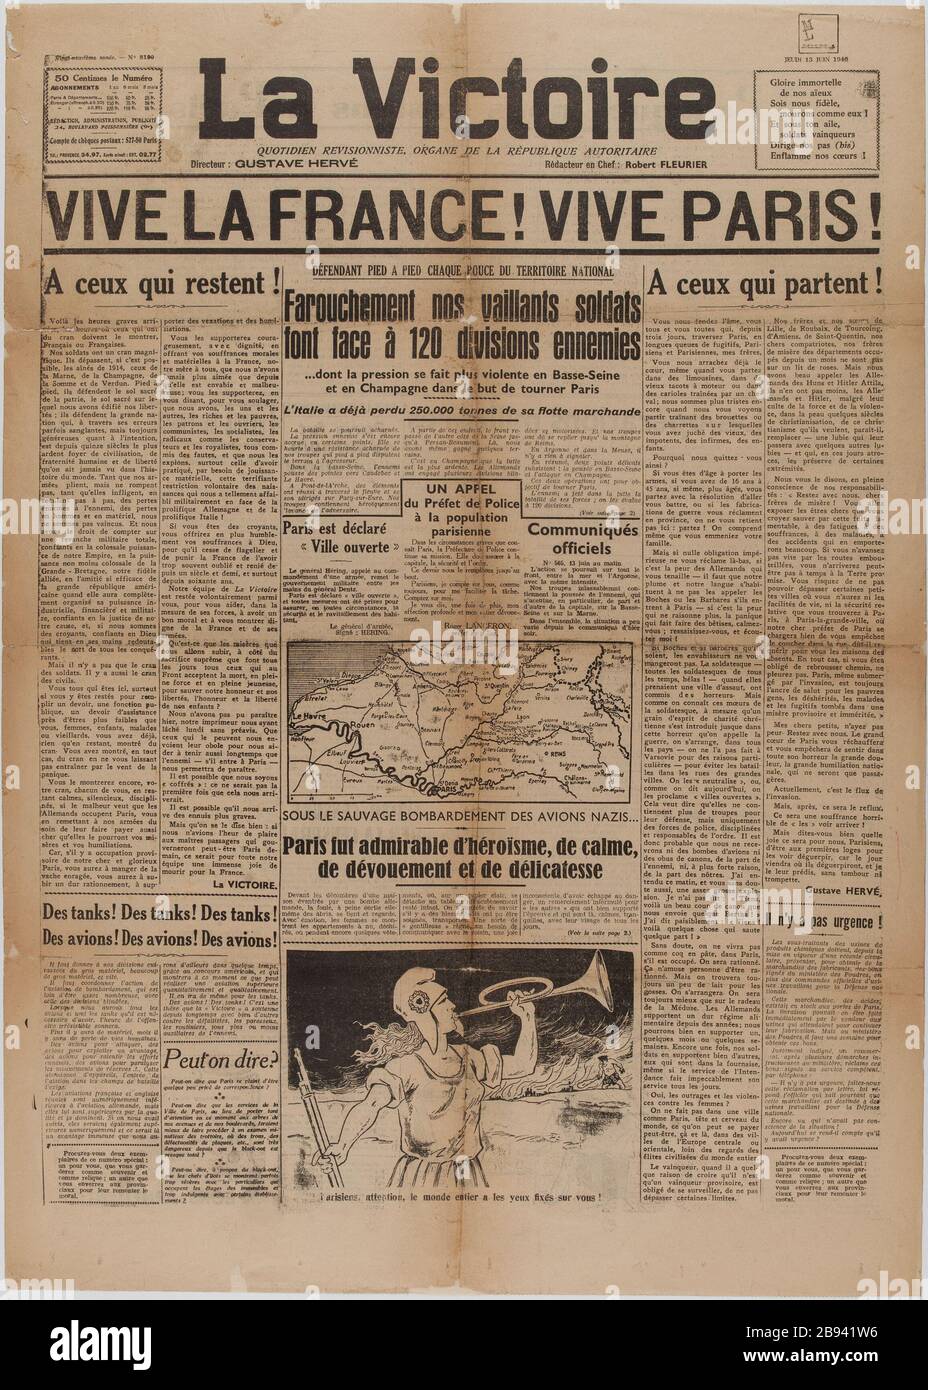 Newspaper 'Victory' of June 13, 1940 Journal 'La Victoire' du 13 juin 1940. Papier imprimé, 1940. Musée du Général Leclerc de Hauteclocque et de la Libération de Paris, musée Jean Moulin. Stock Photo